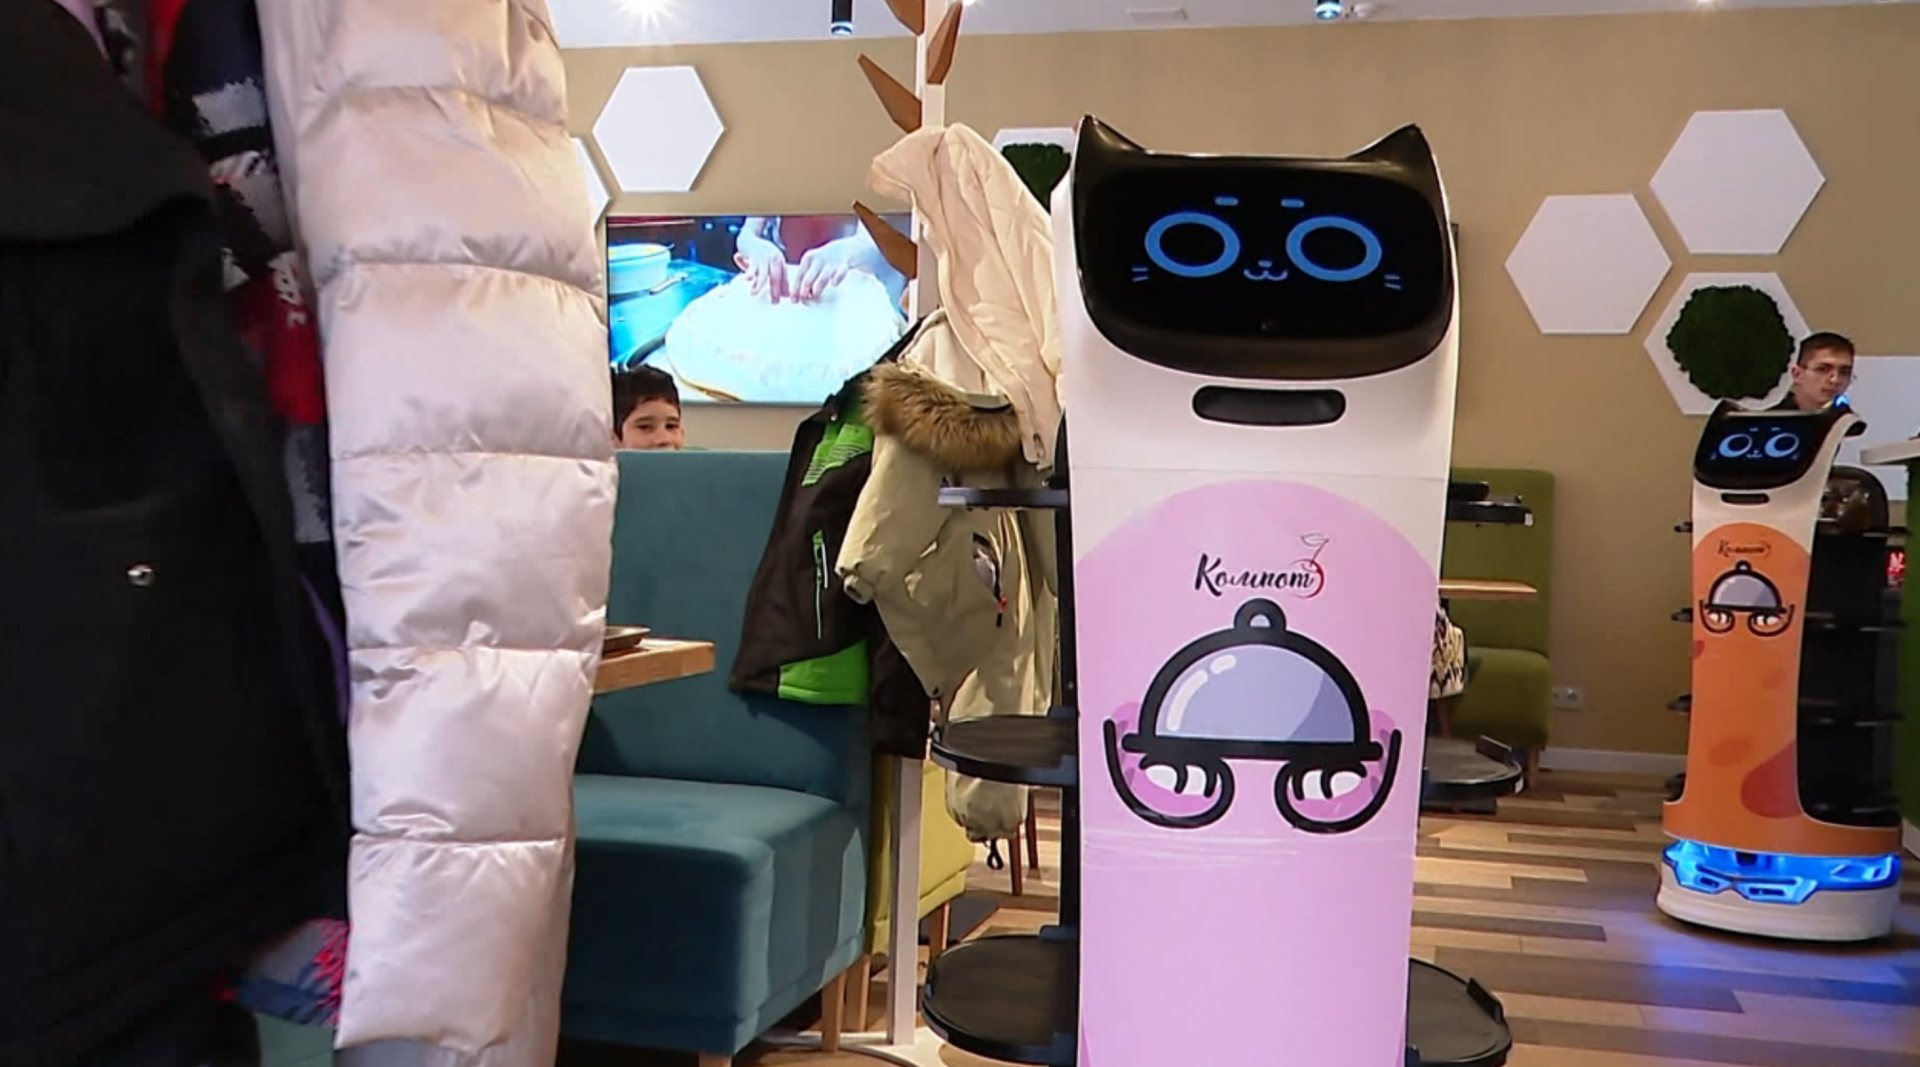 В Челнах посетителей кафе обслуживают роботы: милая забава или потенциальная опасность